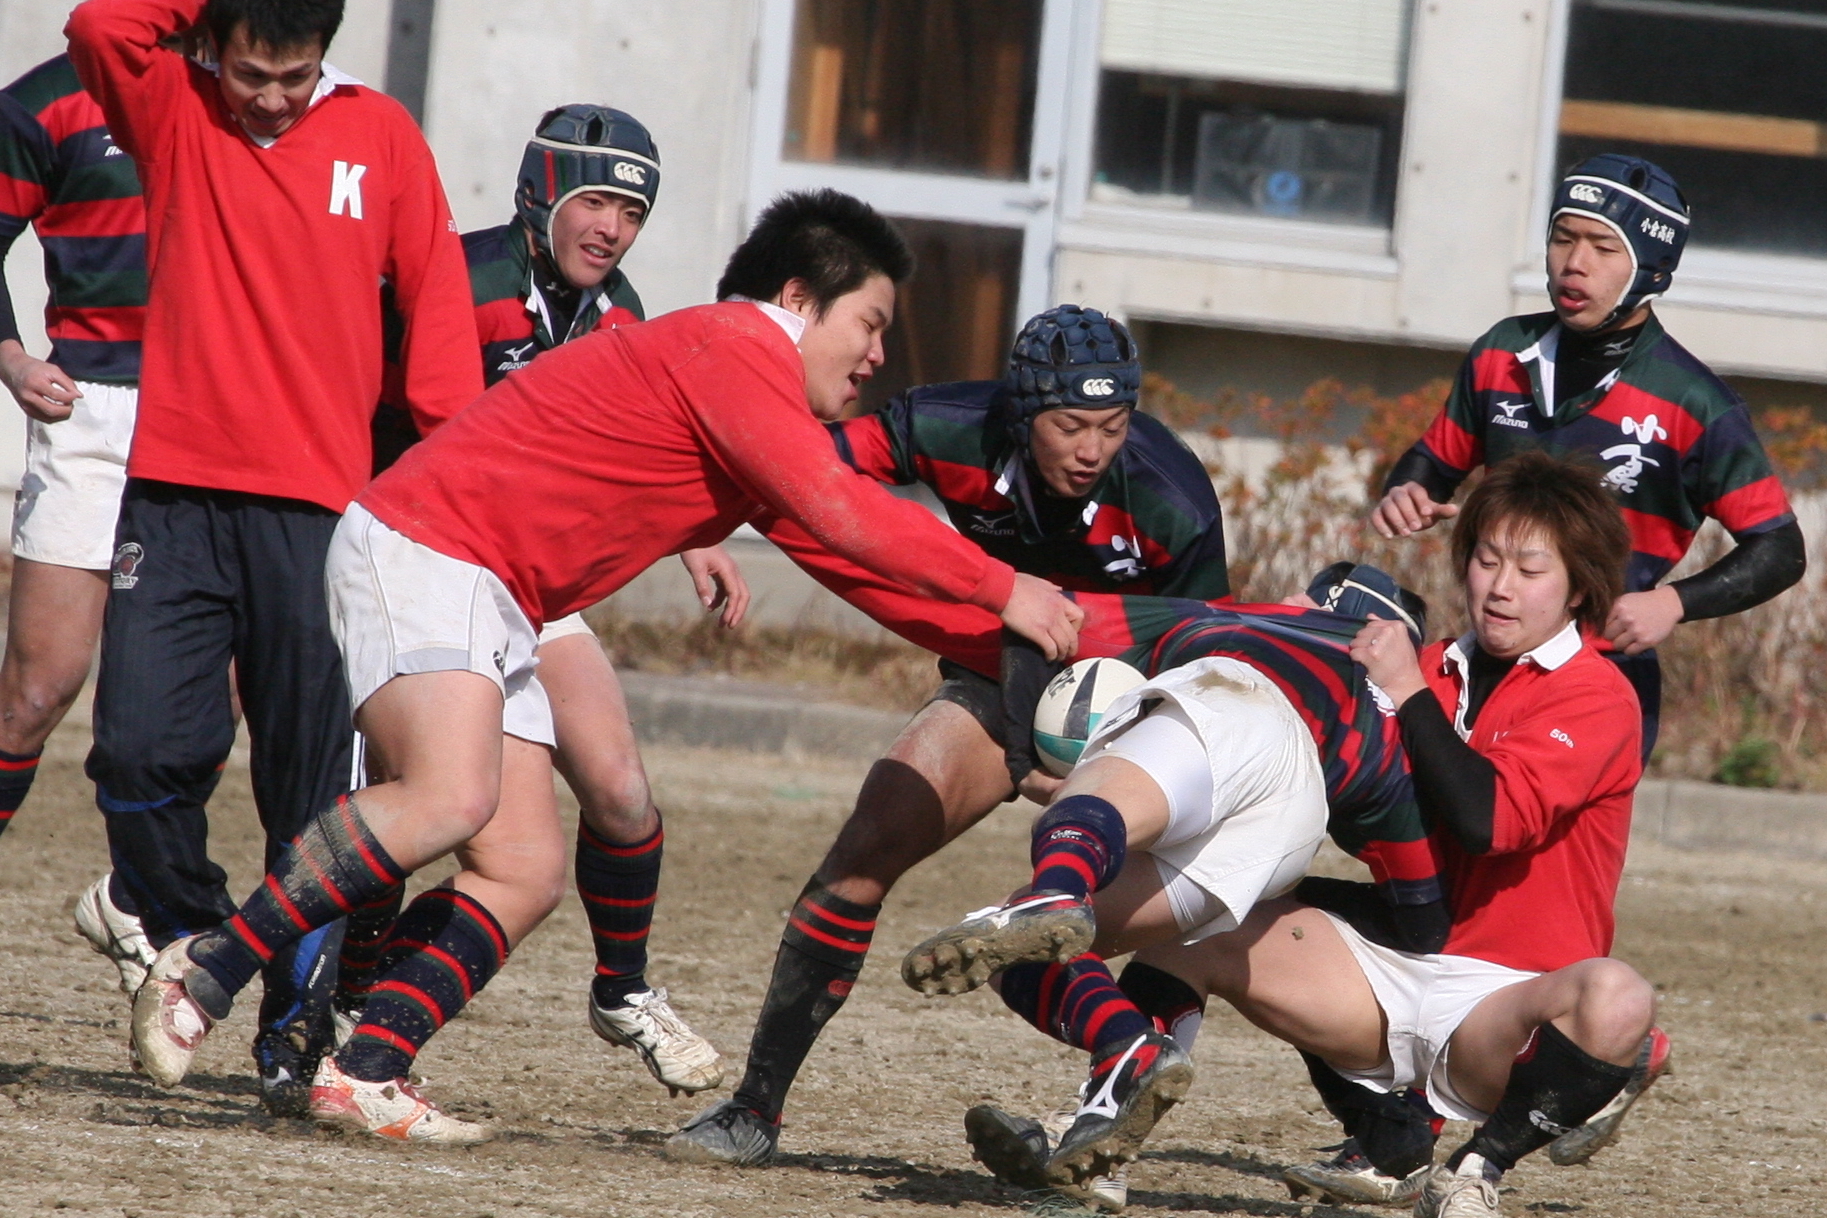 http://kokura-rugby.sakura.ne.jp/2010.3.1%E3%83%BBOB%E6%88%A62.JPG